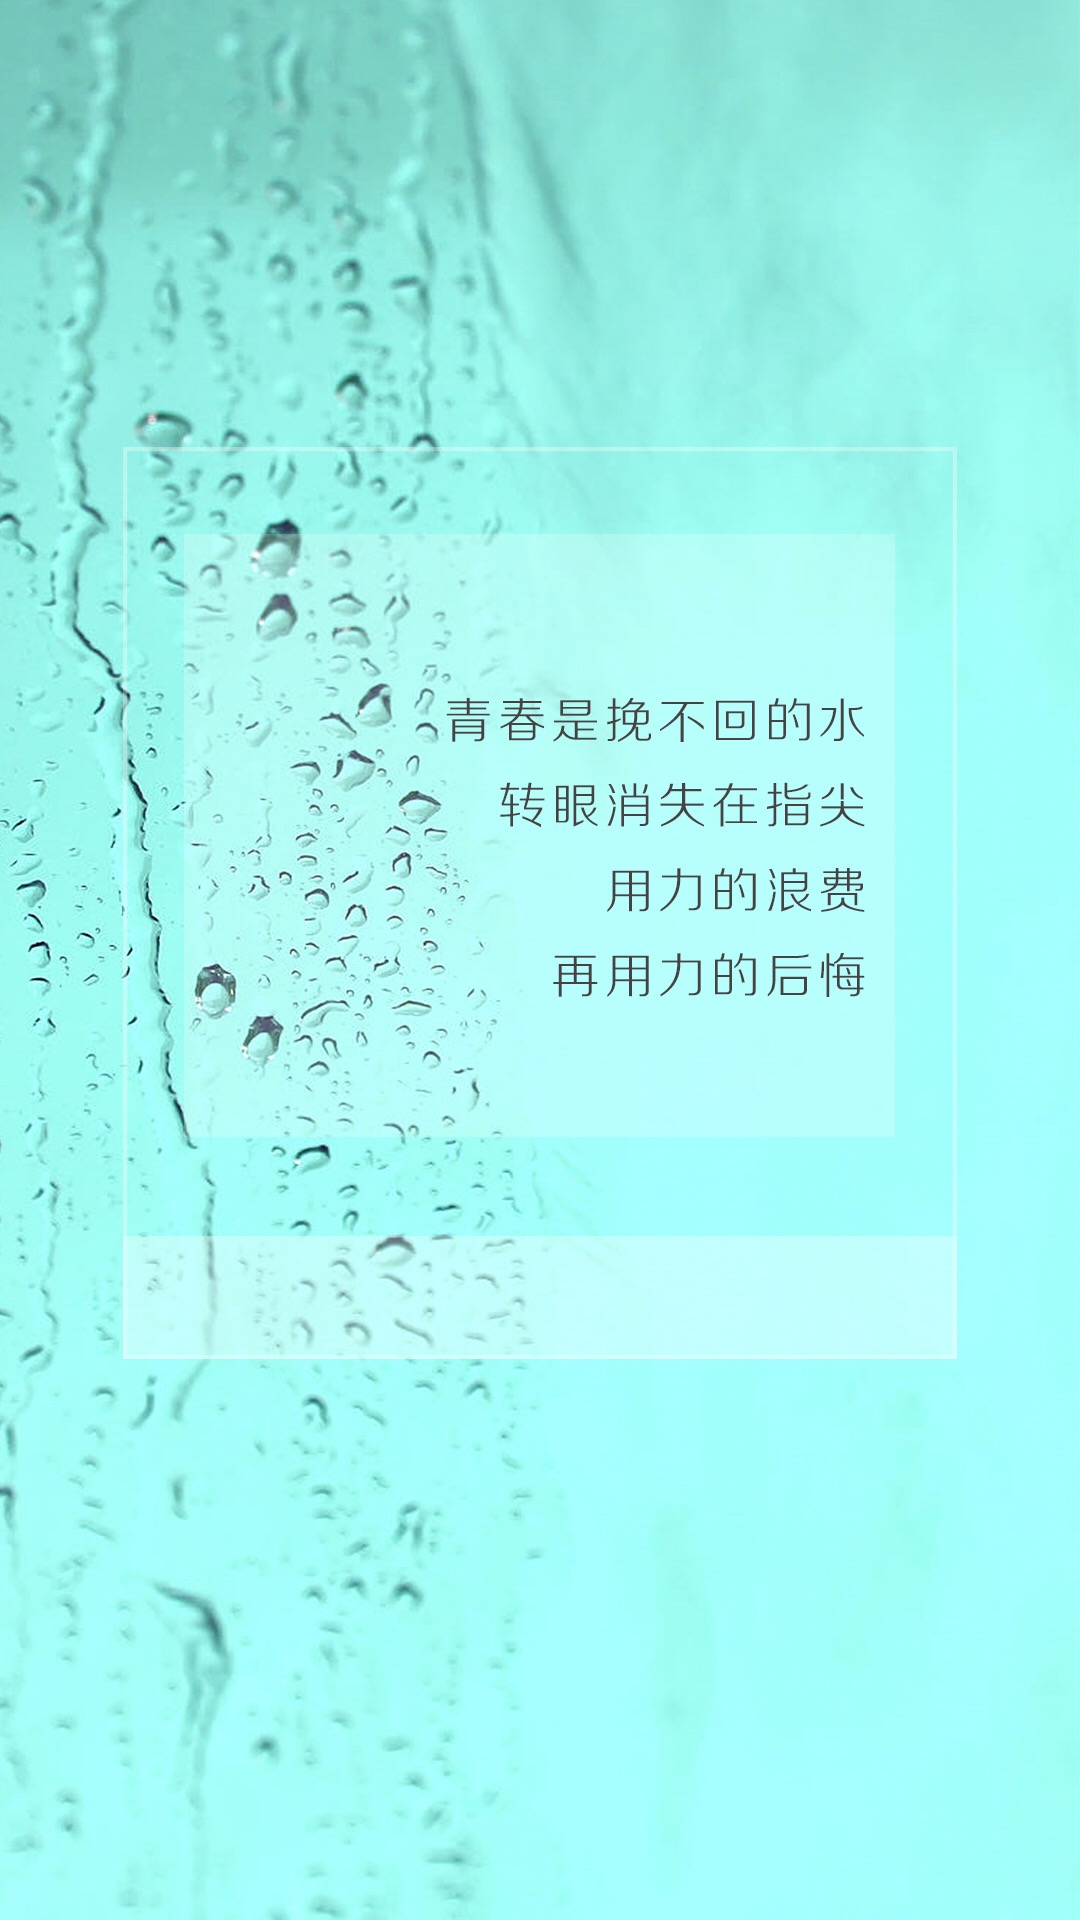 适合下雨发朋友圈的文字图片 唯美手机高清壁纸